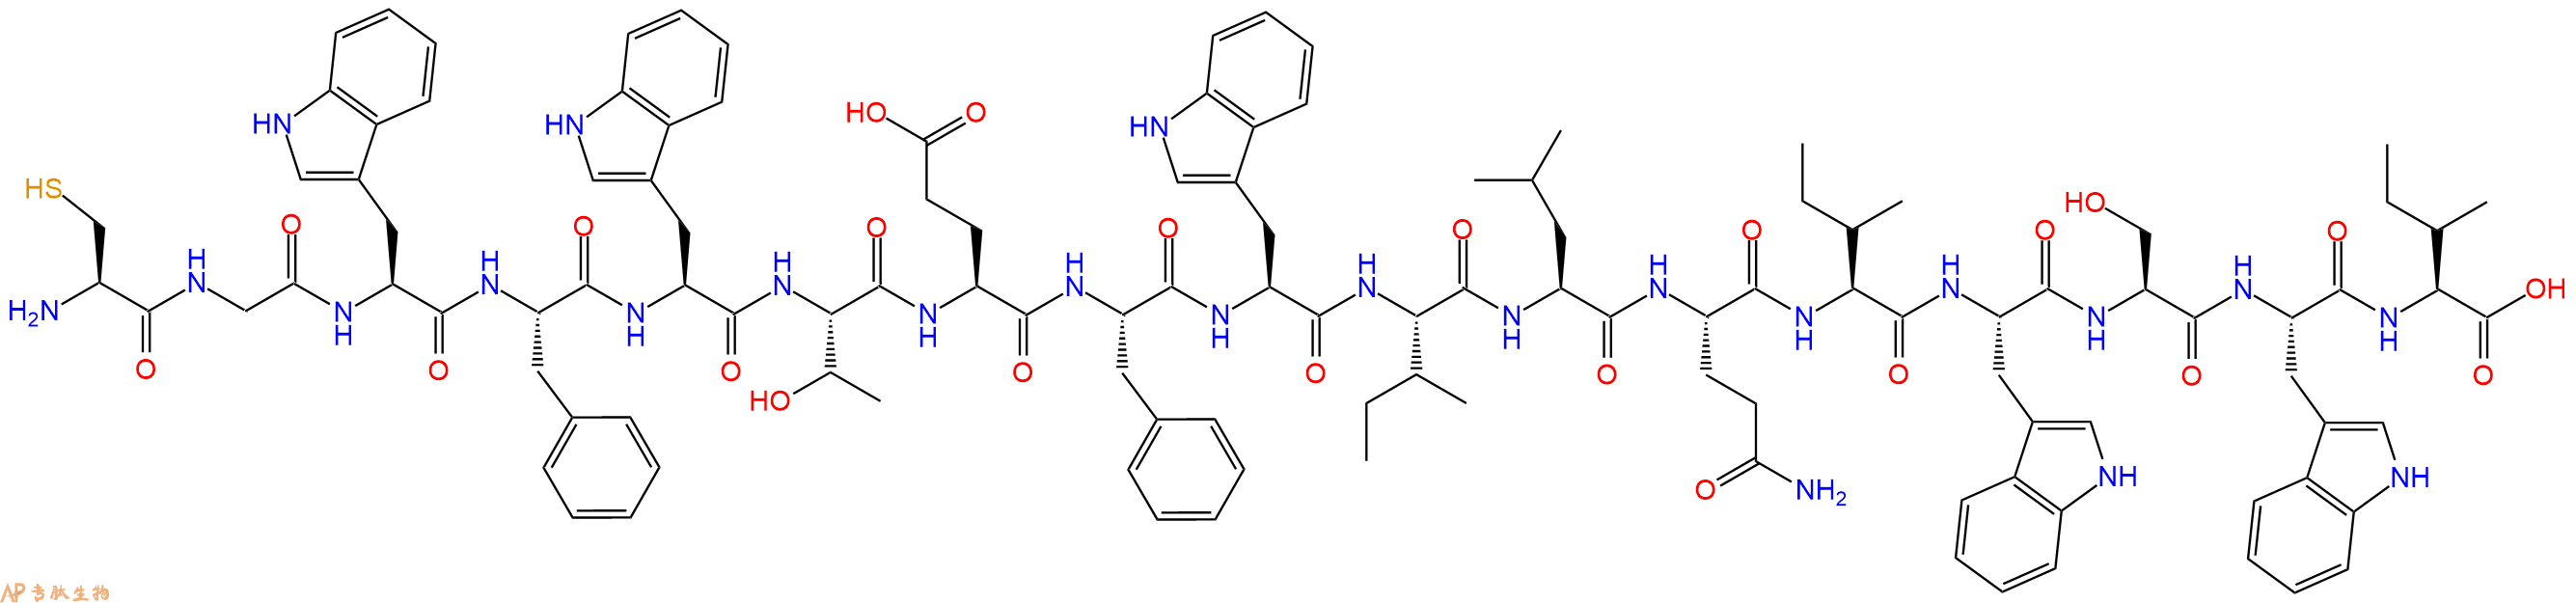 专肽生物产品H2N-Cys-Gly-Trp-Phe-Trp-Thr-Glu-Phe-Trp-Ile-Leu-Gln-Ile-Trp-Ser-Trp-Ile-COOH